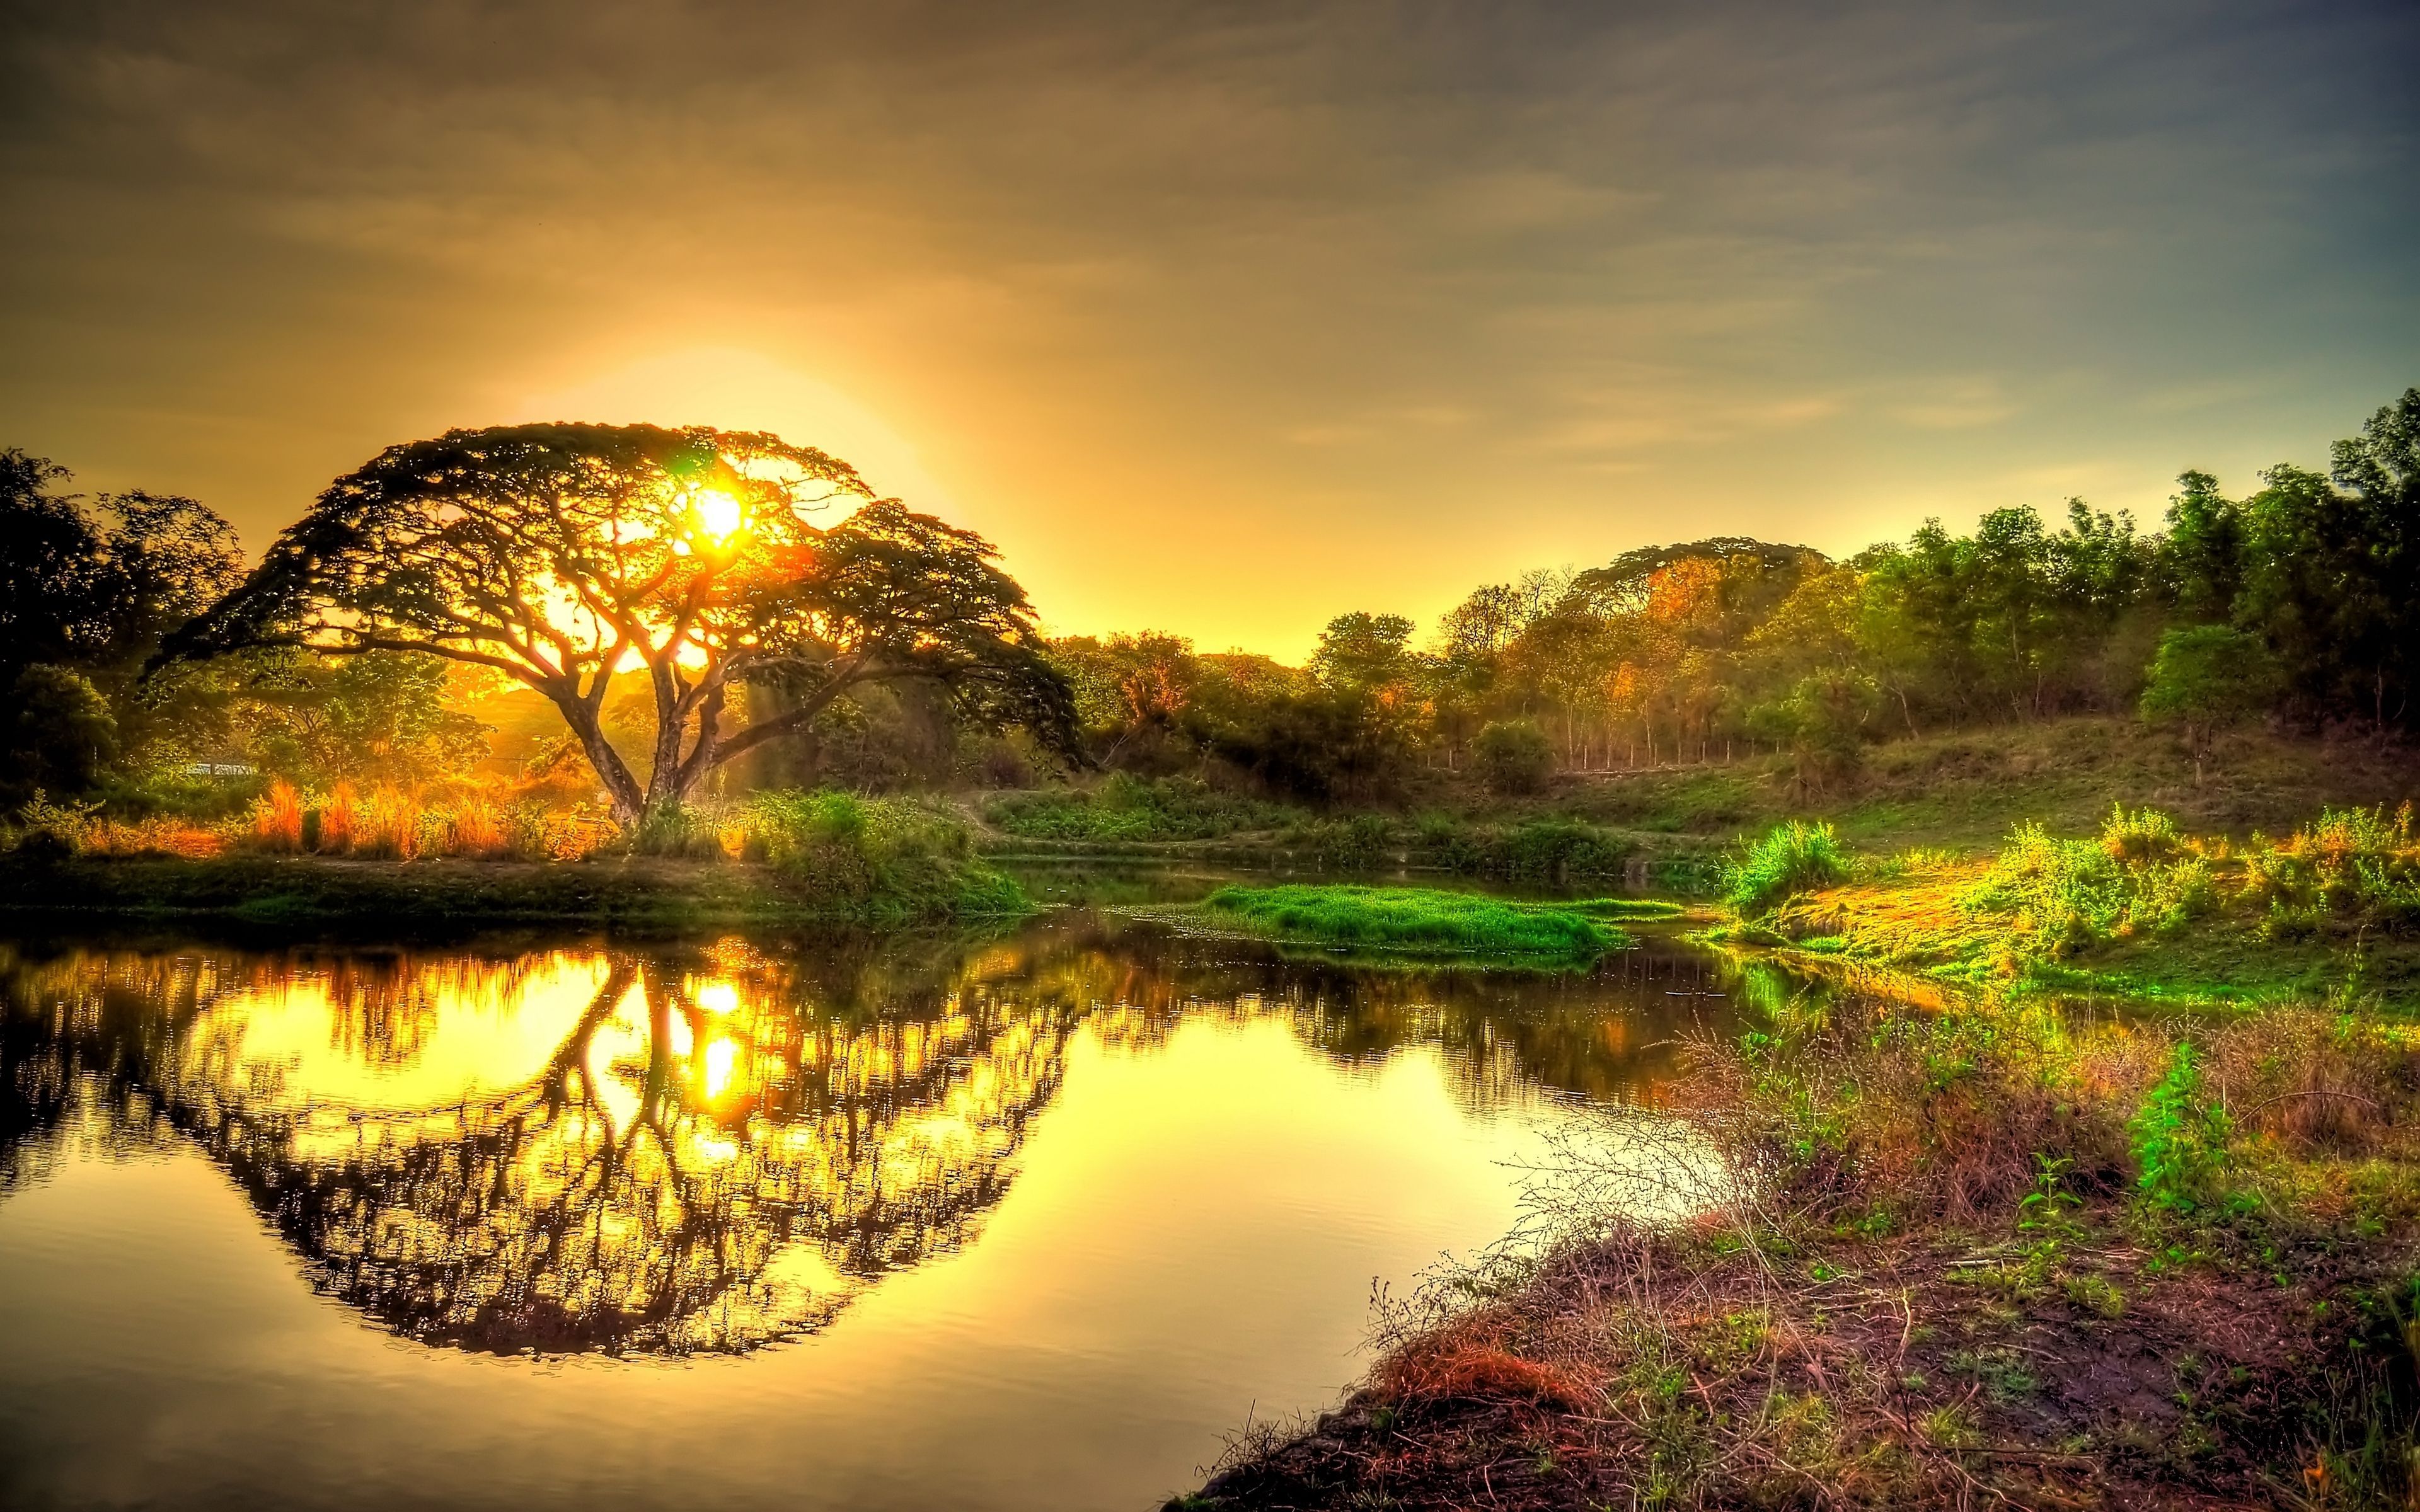 Bình minh trên cây là một trong những phong cảnh thiên nhiên tuyệt đẹp và có sức hút riêng. Khi mặt trời mọc lên, ánh sáng tràn ngập cây xanh, tạo nên bức tranh thơ mộng và lãng mạn. Hãy cùng tha hồ chiêm ngưỡng những bức ảnh đẹp như cổ tích này.